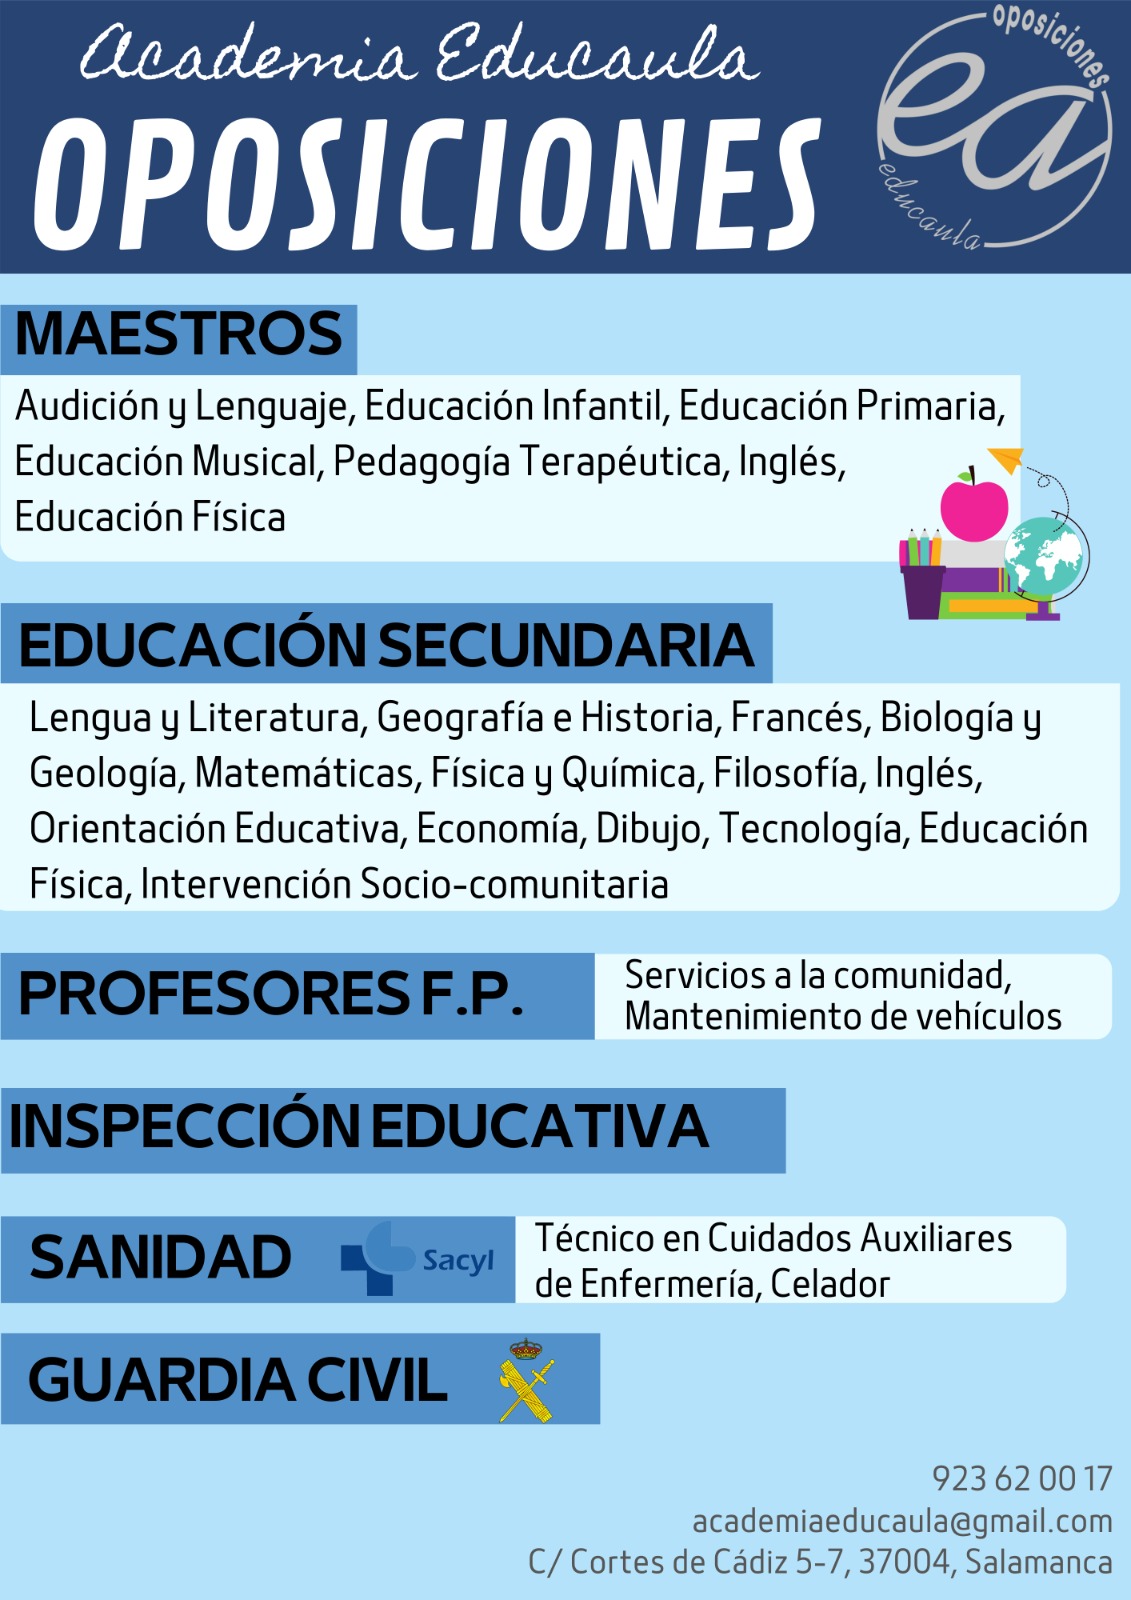 EDUCAULA PREPARA OPOSICIONES DOCENTES, SANIDAD Y GUARDIA CIVIL